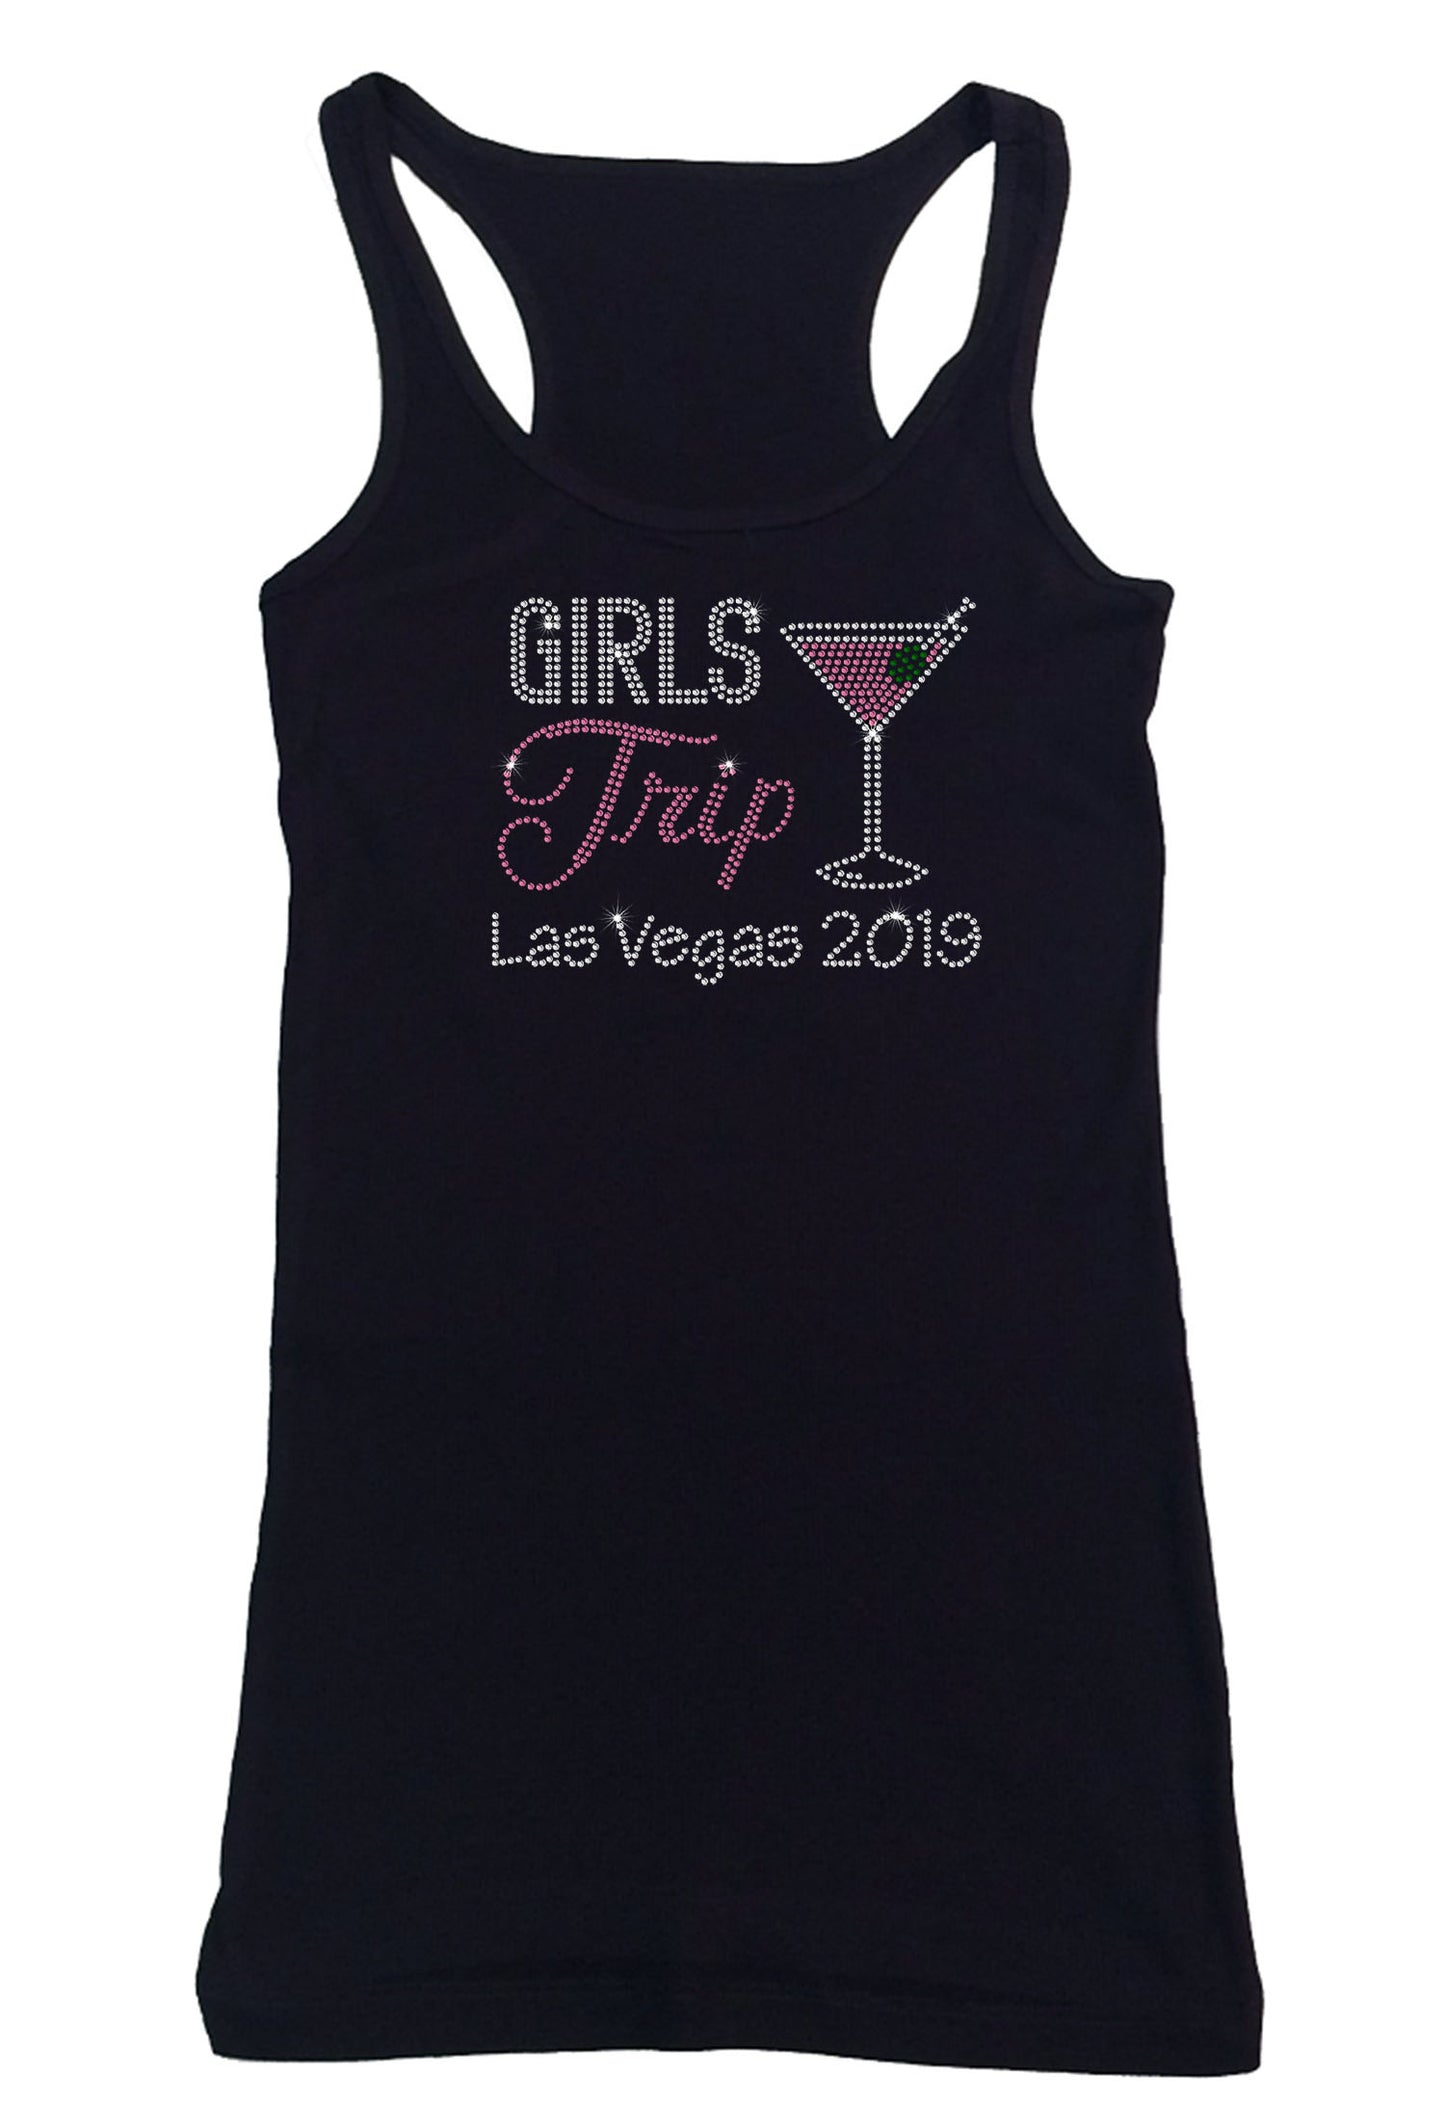 Womens T-shirt with Girls Trip Martini in Rhinestones